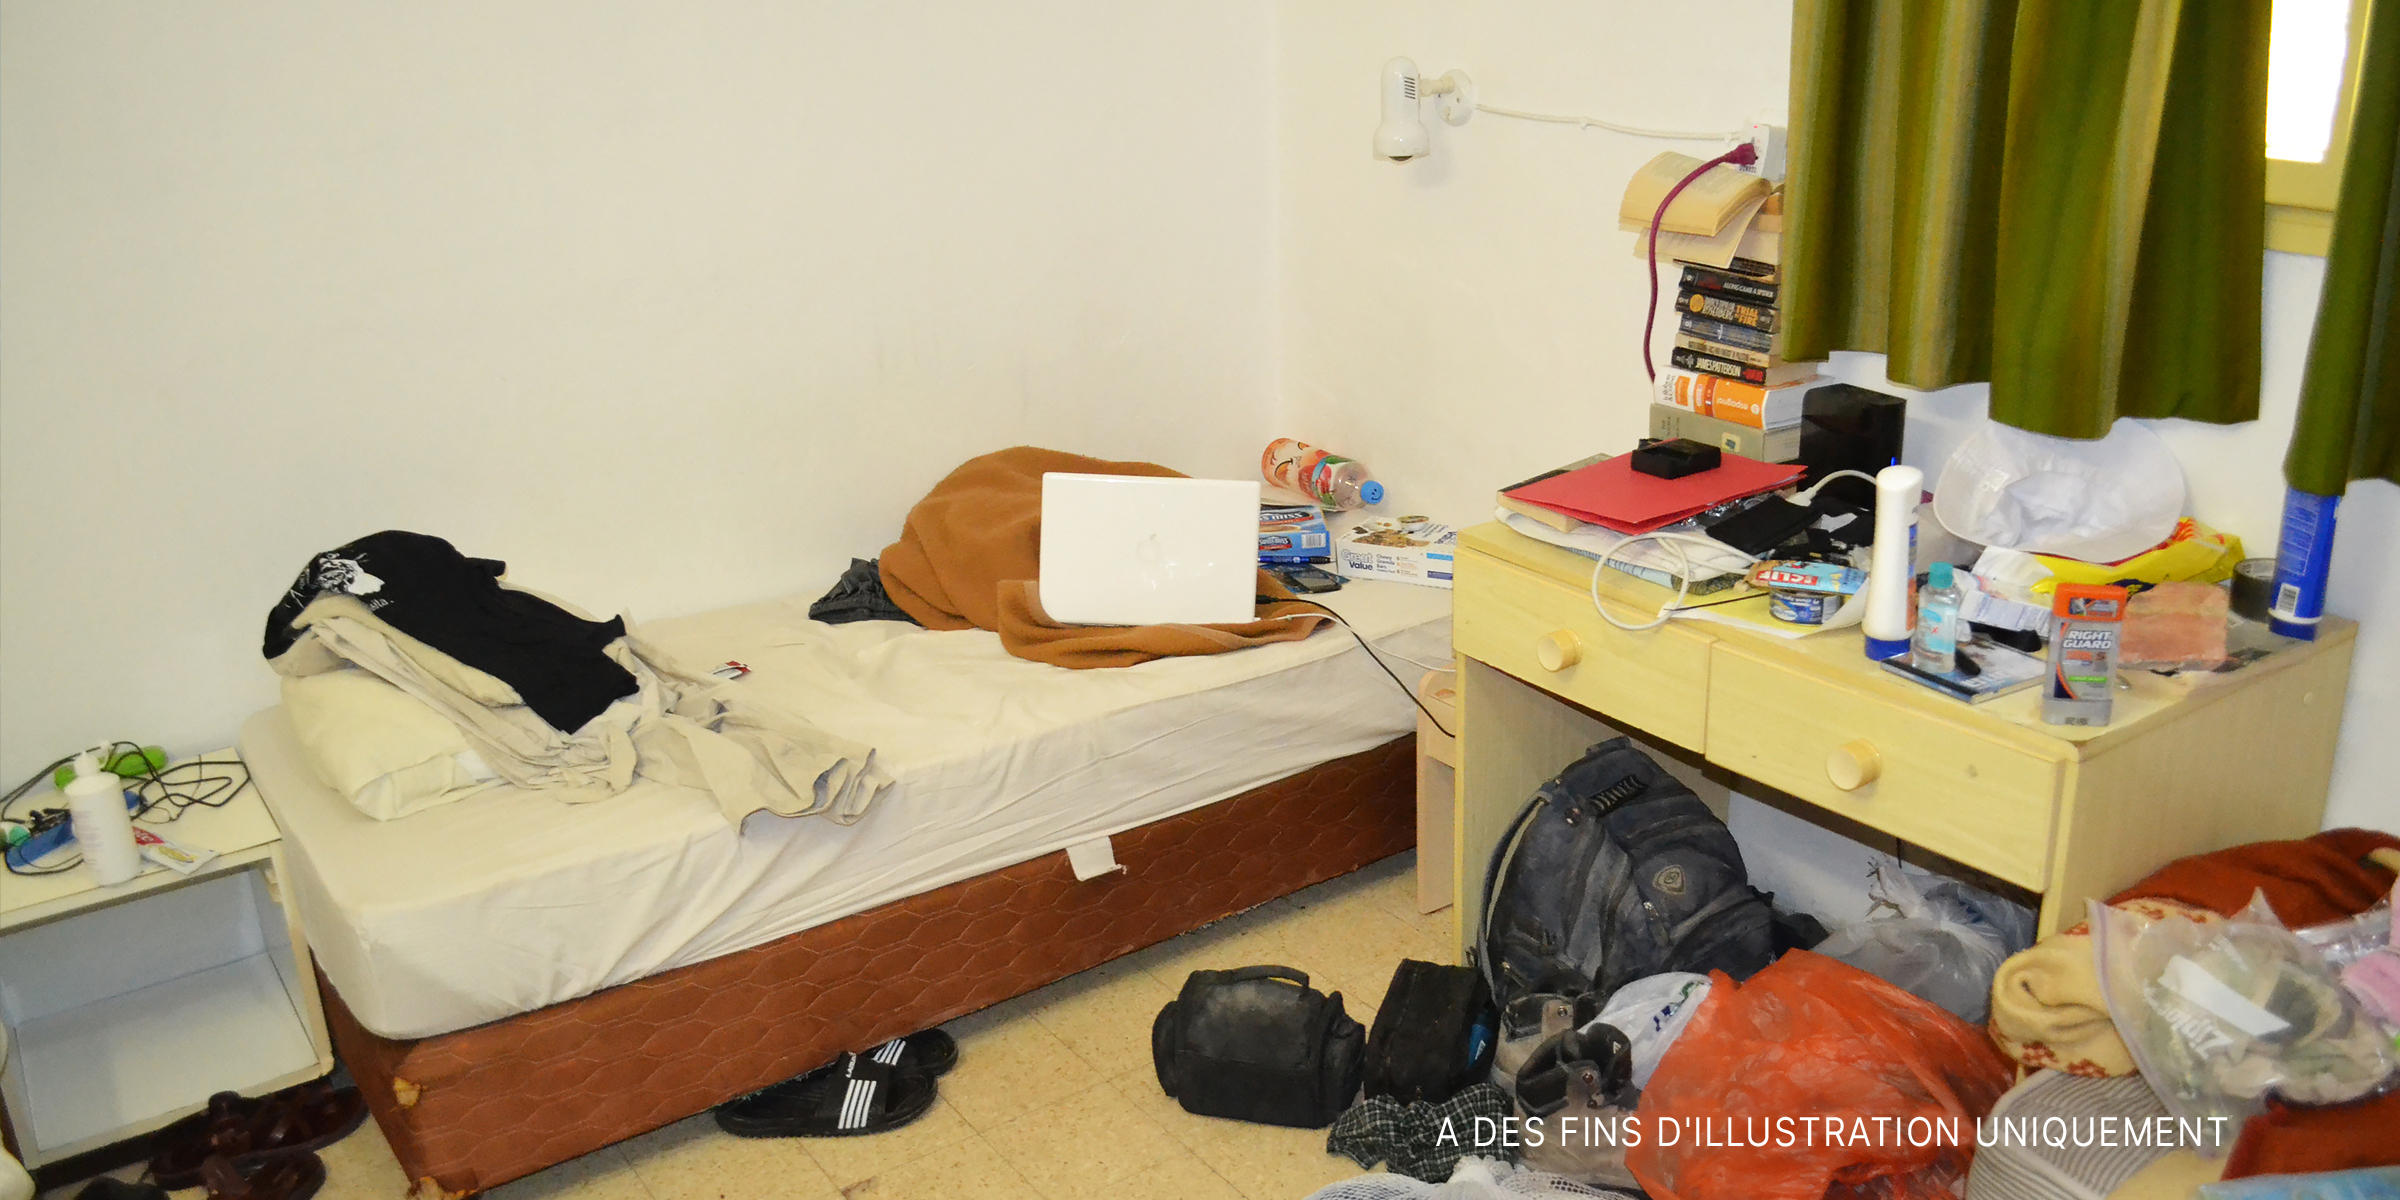 Une chambre en désordre. | Source : Flickr / kylesorkness (CC BY 2.0)